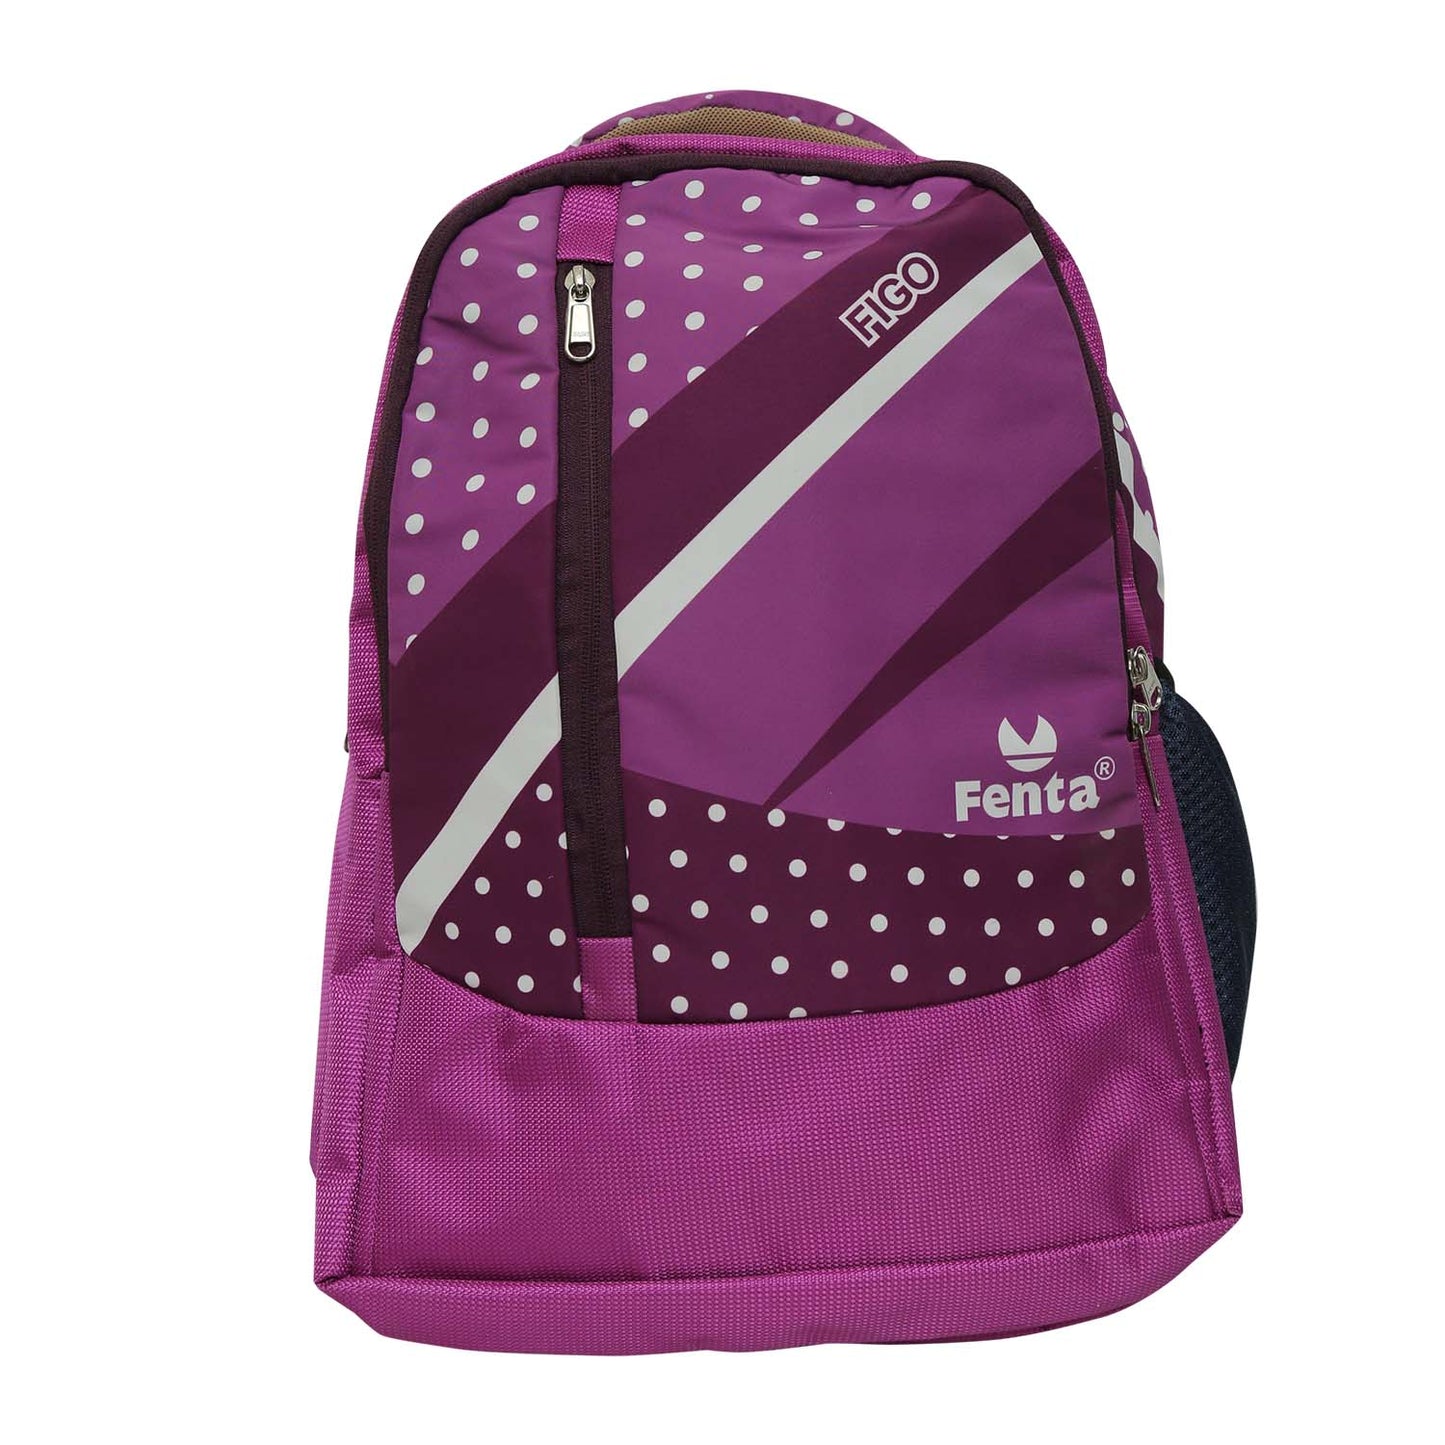 Fenta Sports Unisex Backpack (Magenta)